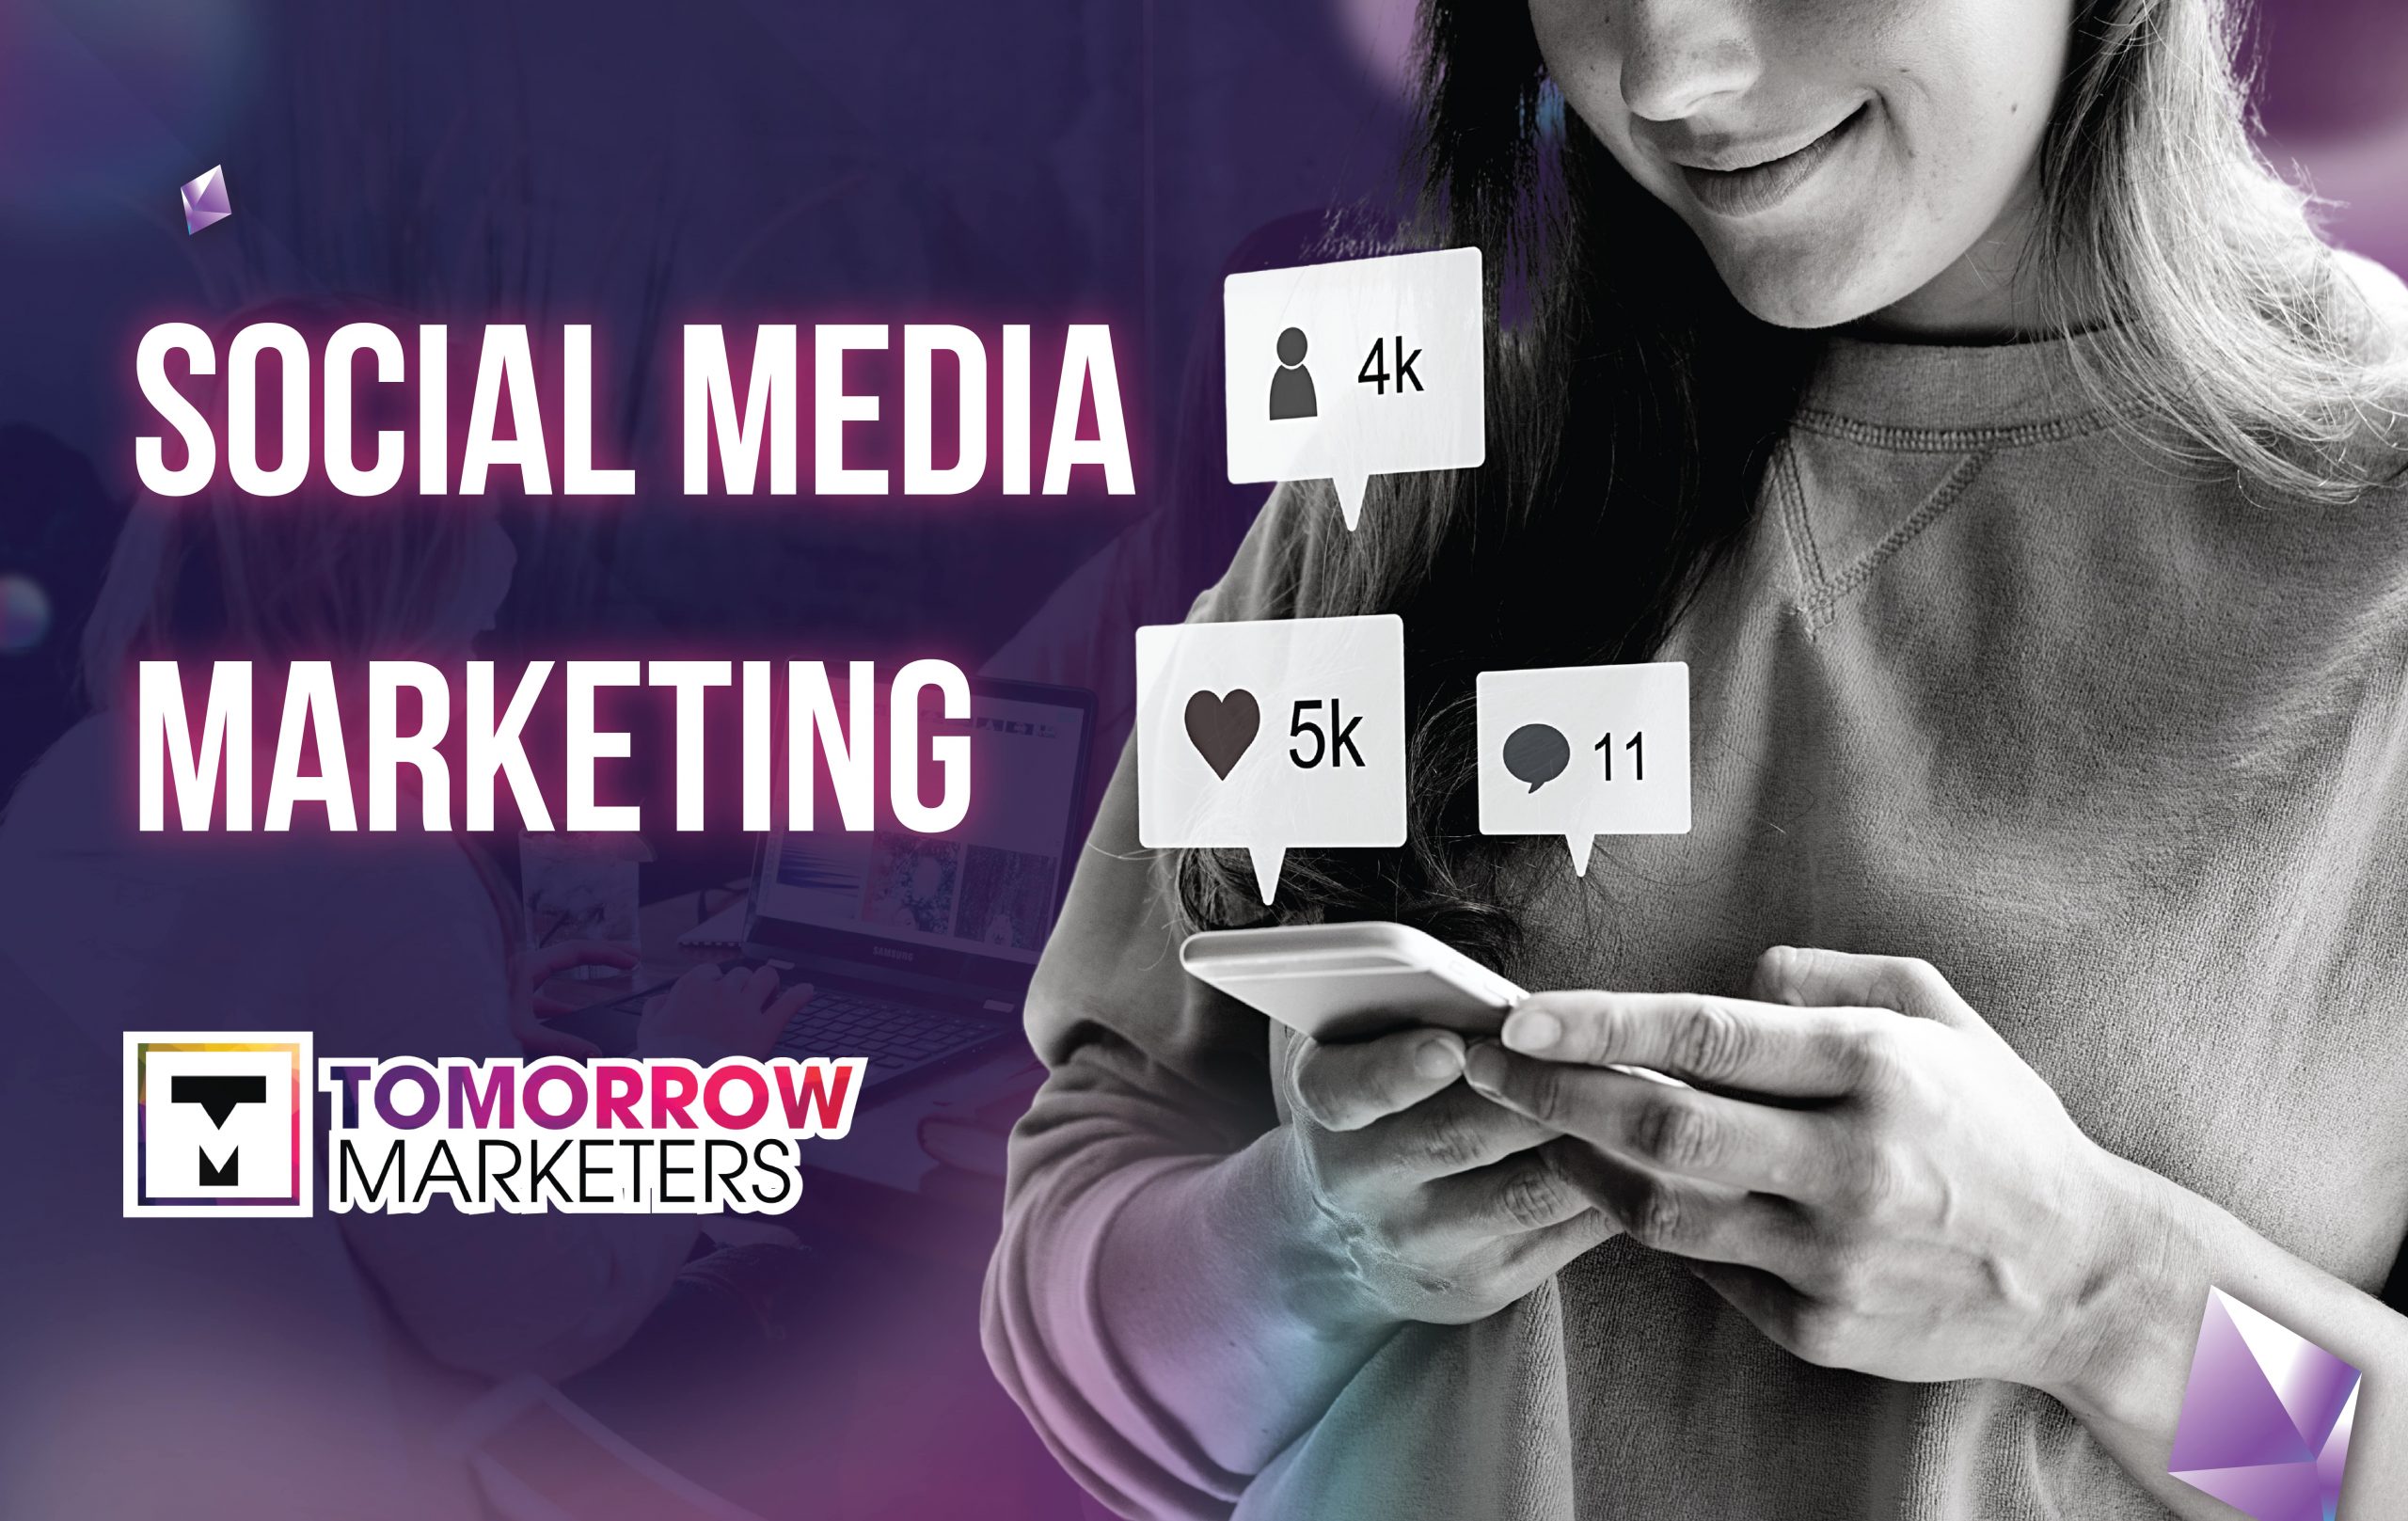 social media marketing là gì